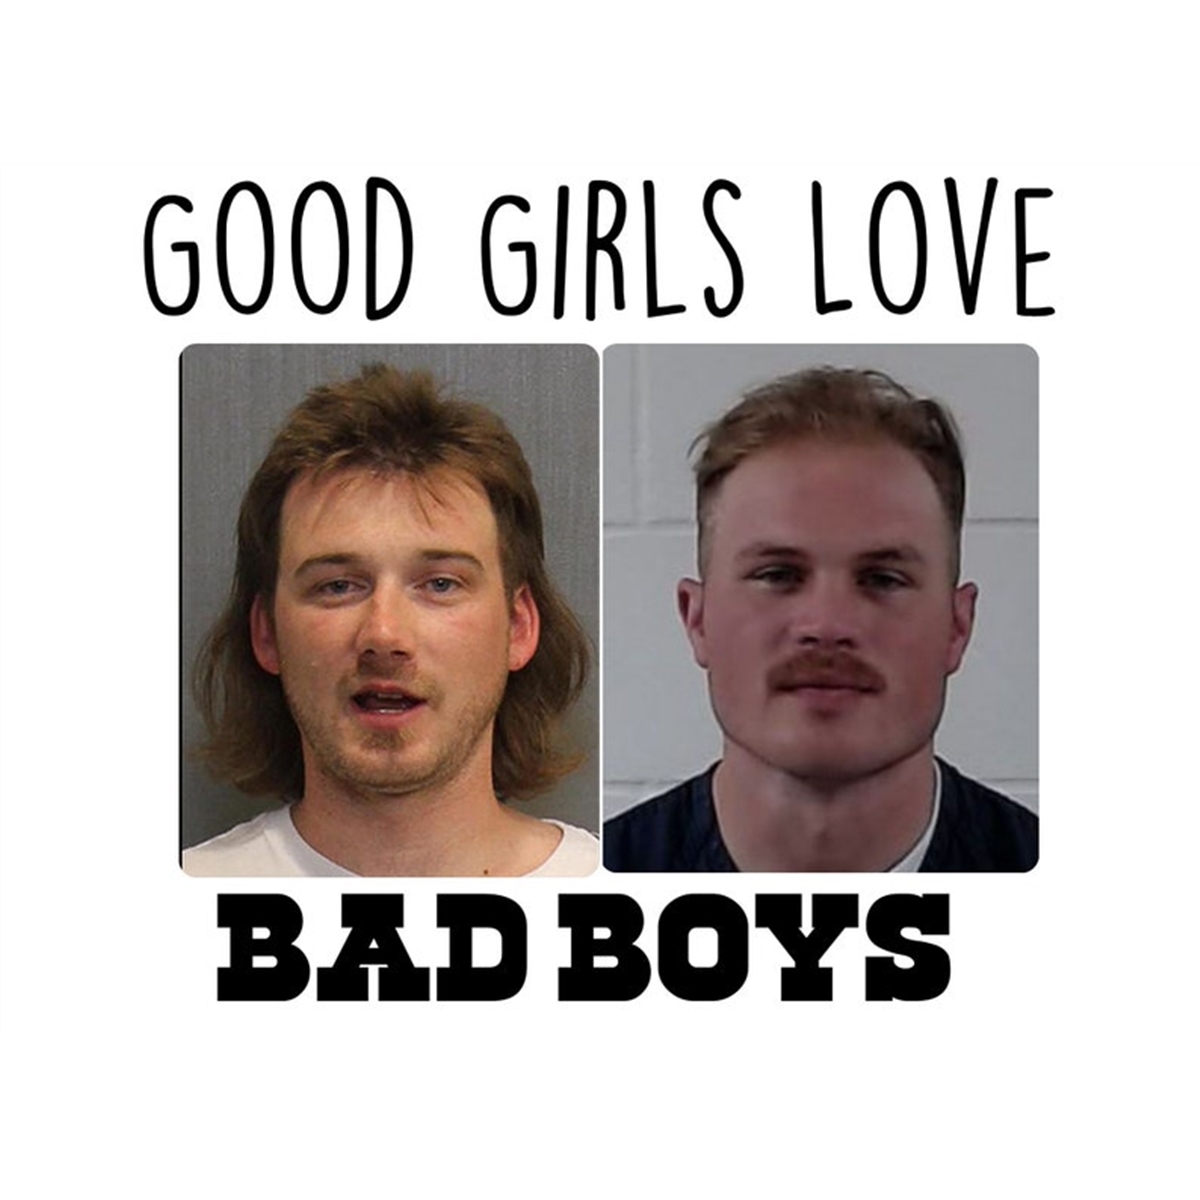 good-girls-love-bad-boys-png-digital-download-image-1